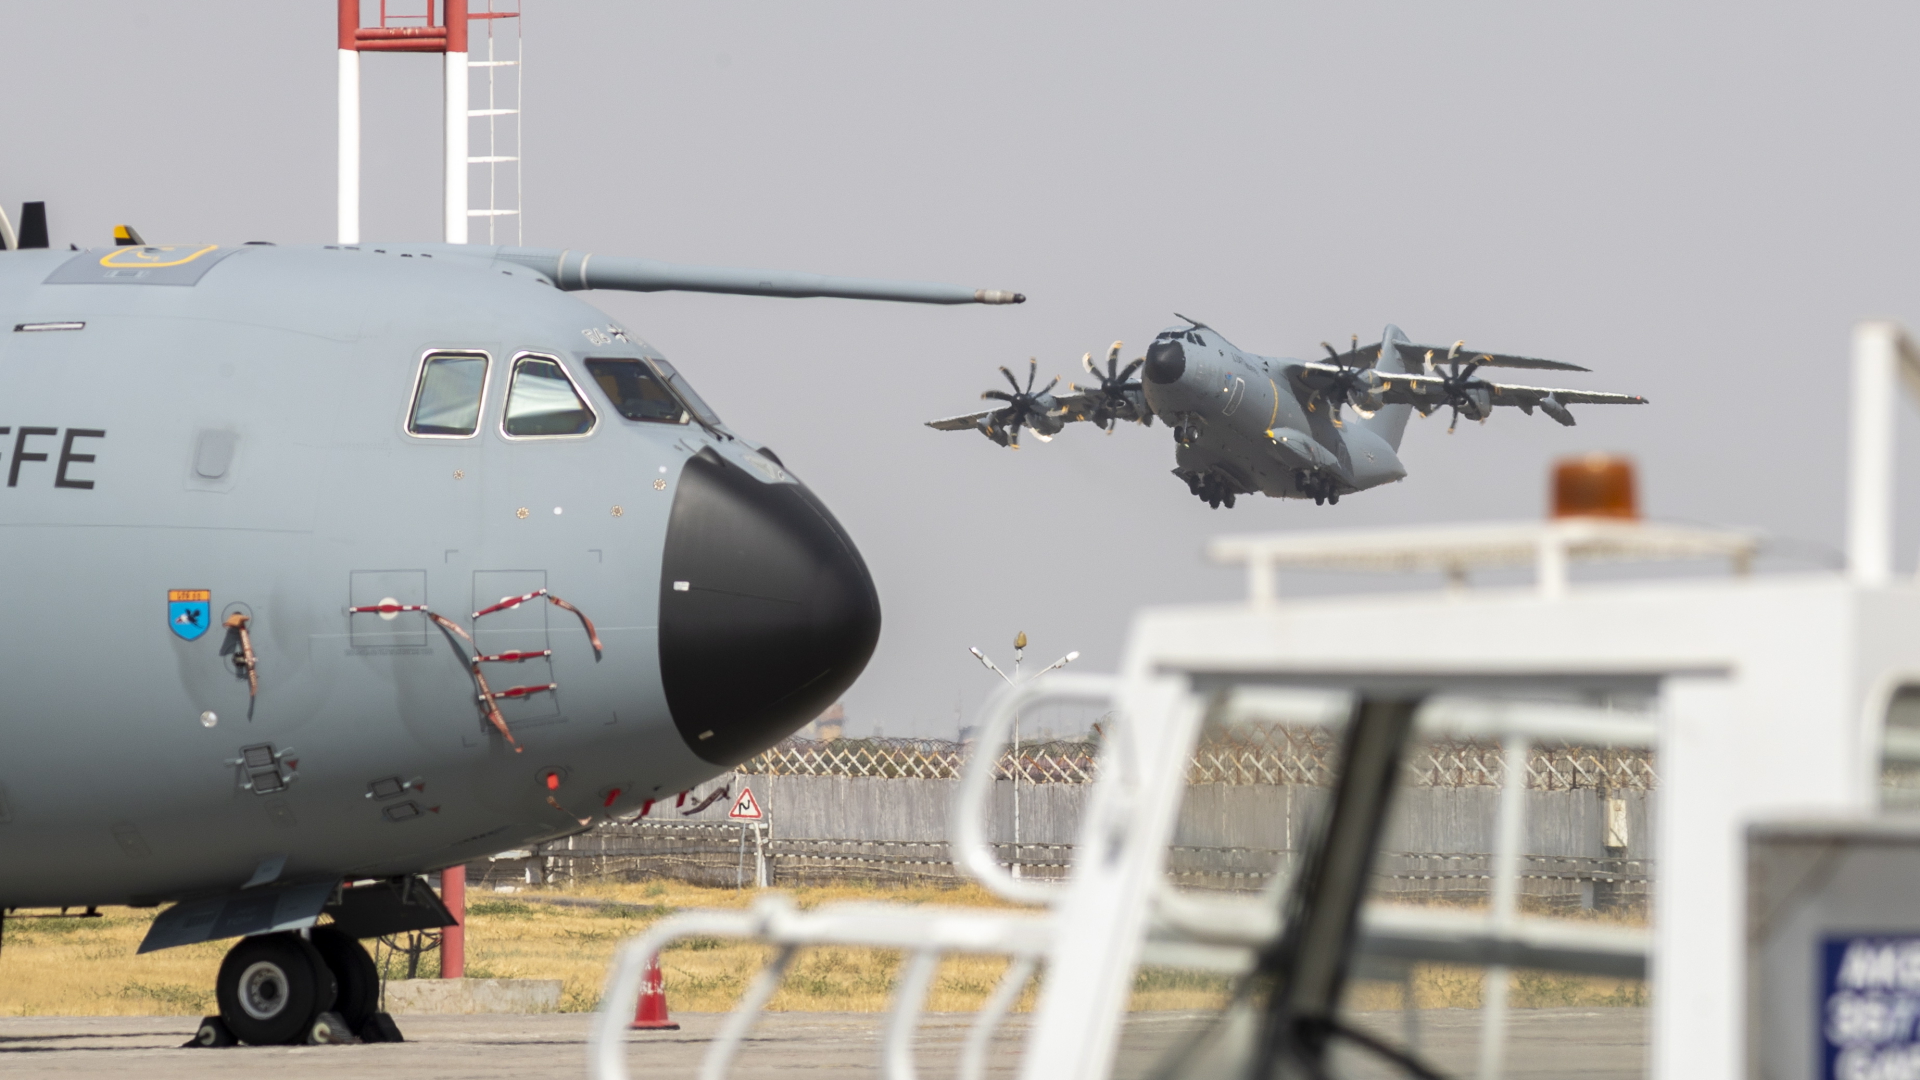 Eine Militärmaschine des Typs A400M steht auf einem Rollfeld auf dem Flughafen in Taschkent, während im Hintergrund ein anderes Flugzeug des Typs abhebt. | EPA